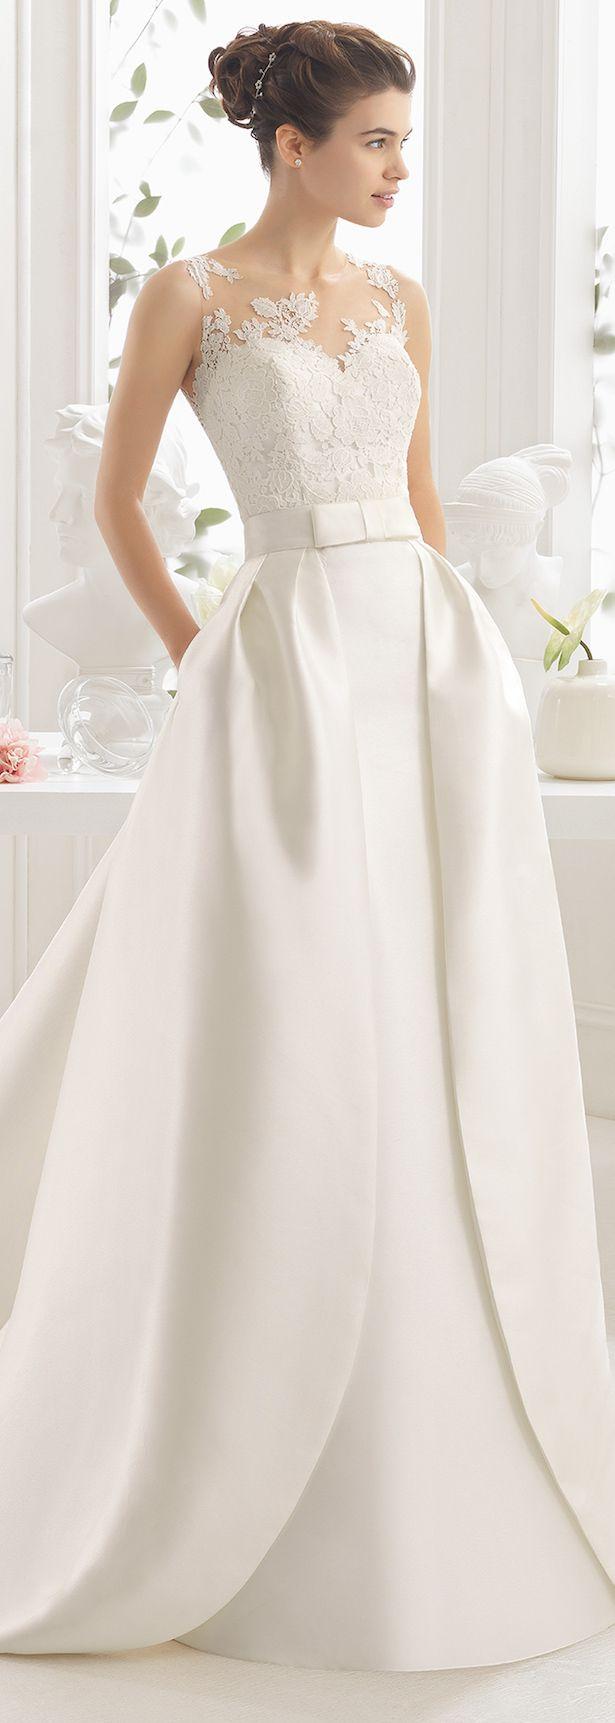 زفاف - Wedding Dresses By Aire Barcelona 2017 Bridal Collection